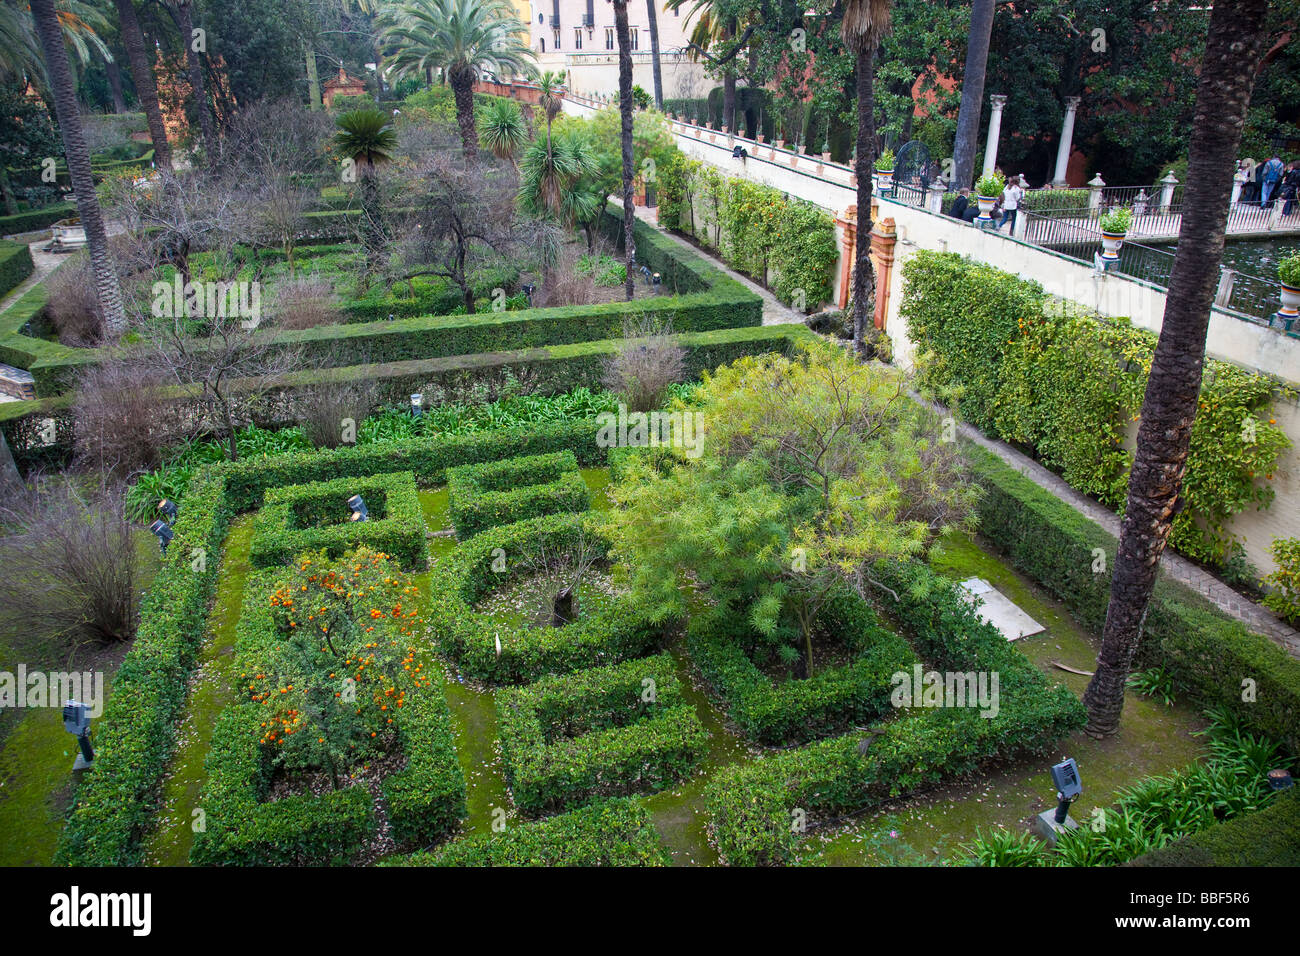 Jardin d'El Estanque dans l'Alcazar de Séville Espagne Banque D'Images